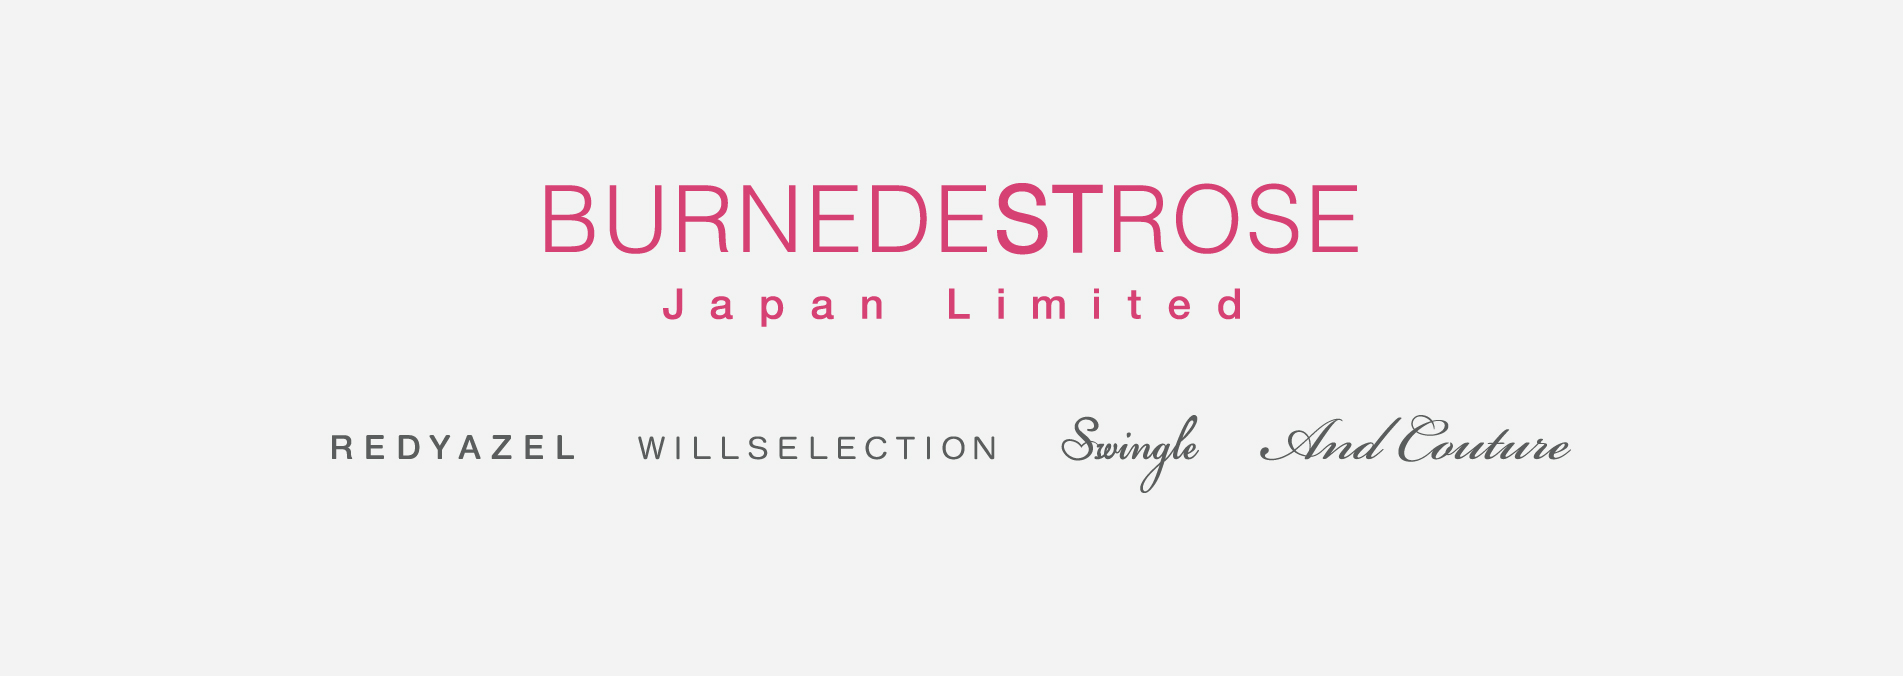 BURNEDESTROSE Japan Limited